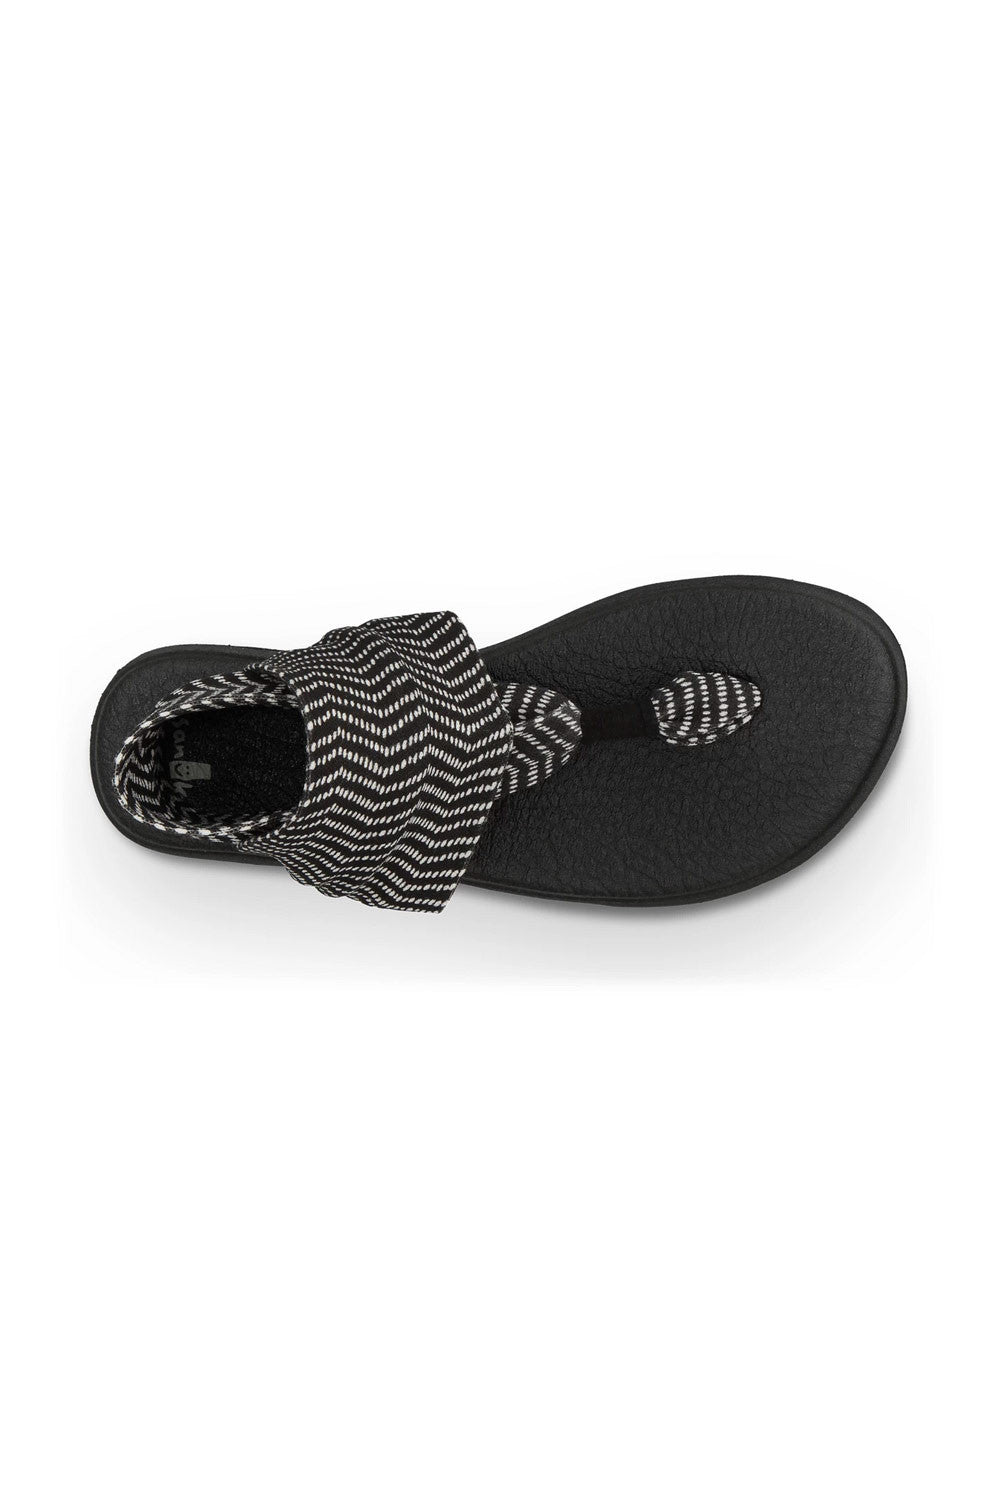 Sanuk Yoga Mat Yoga Sling 2 Prints Sandals– Mainland Skate & Surf